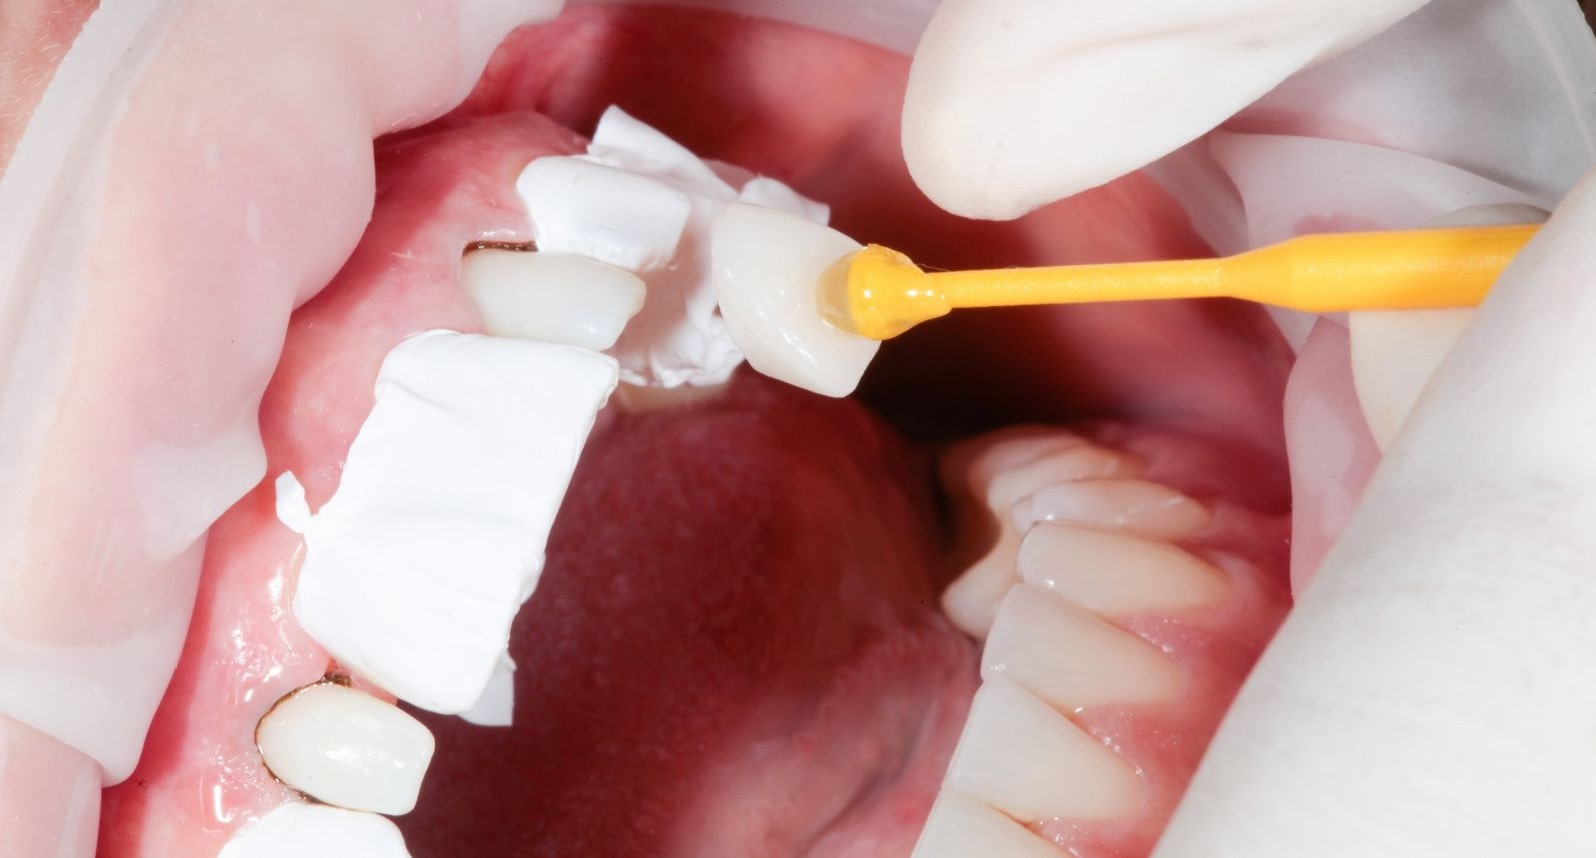 Quy trình thực hiện dán răng sứ thường bao gồm 5 bước